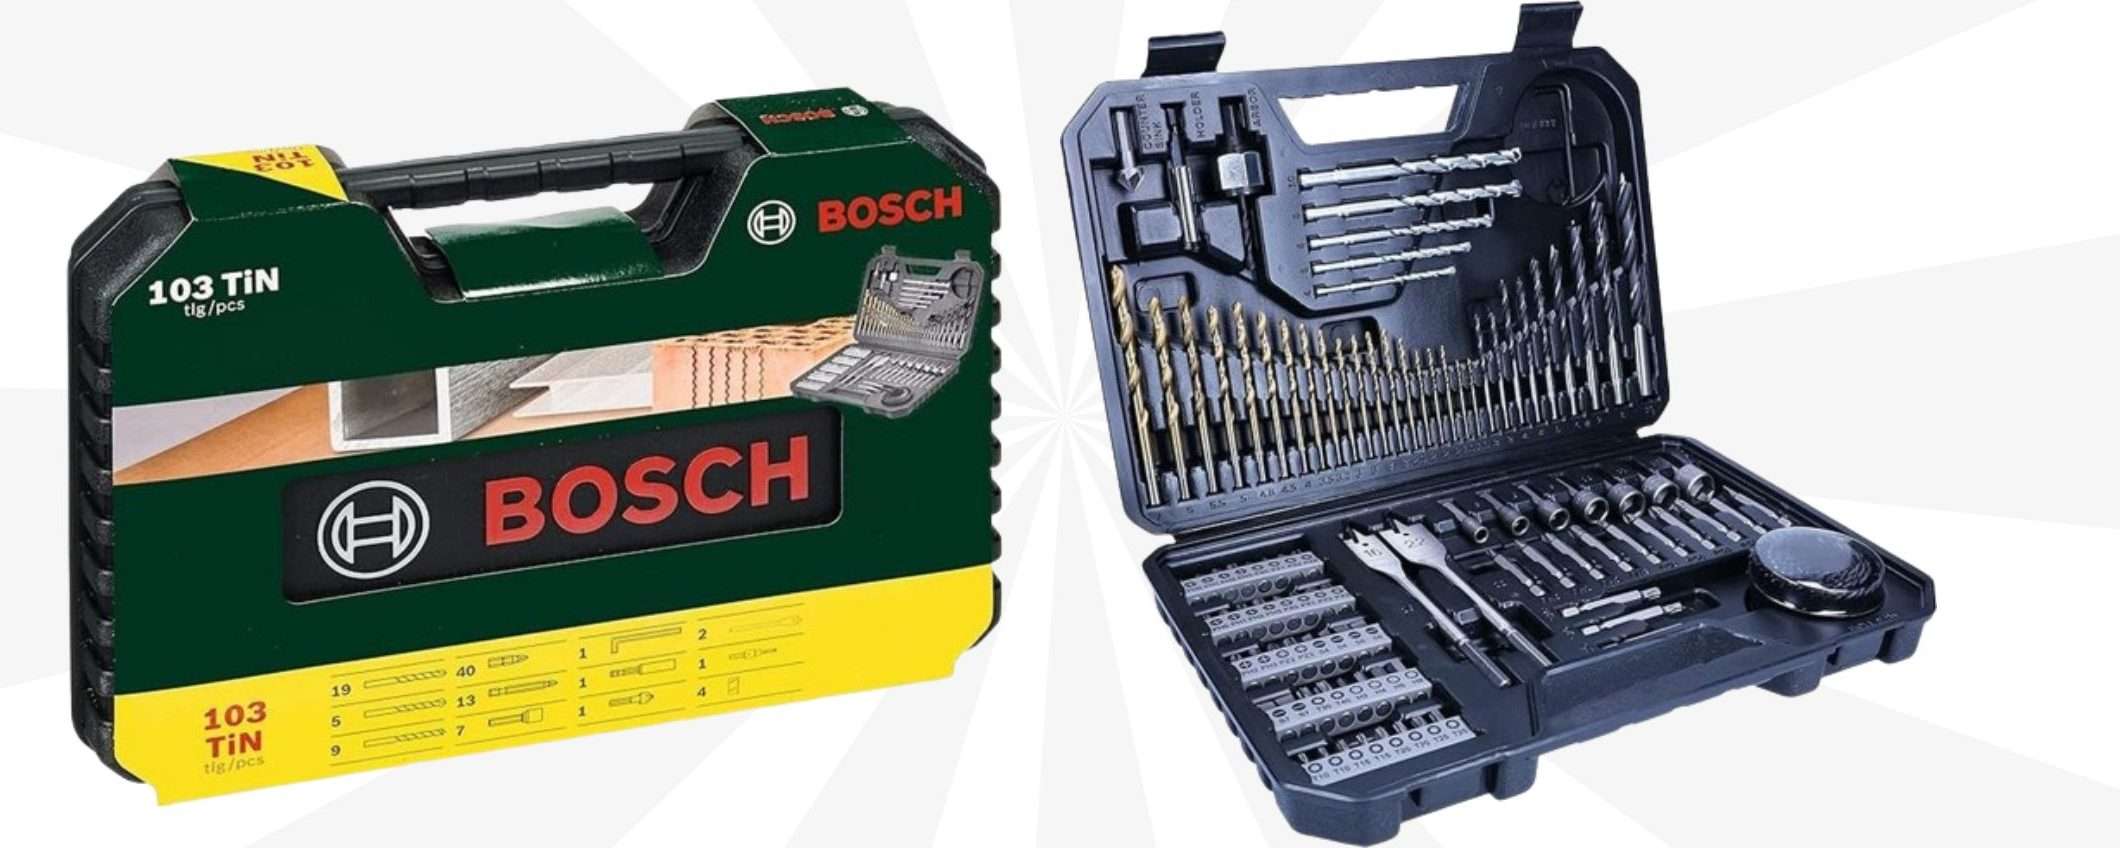 Bosch, FOLLIA di primavera: solo 19€ per il MEGA kit 103 in 1 con custodia